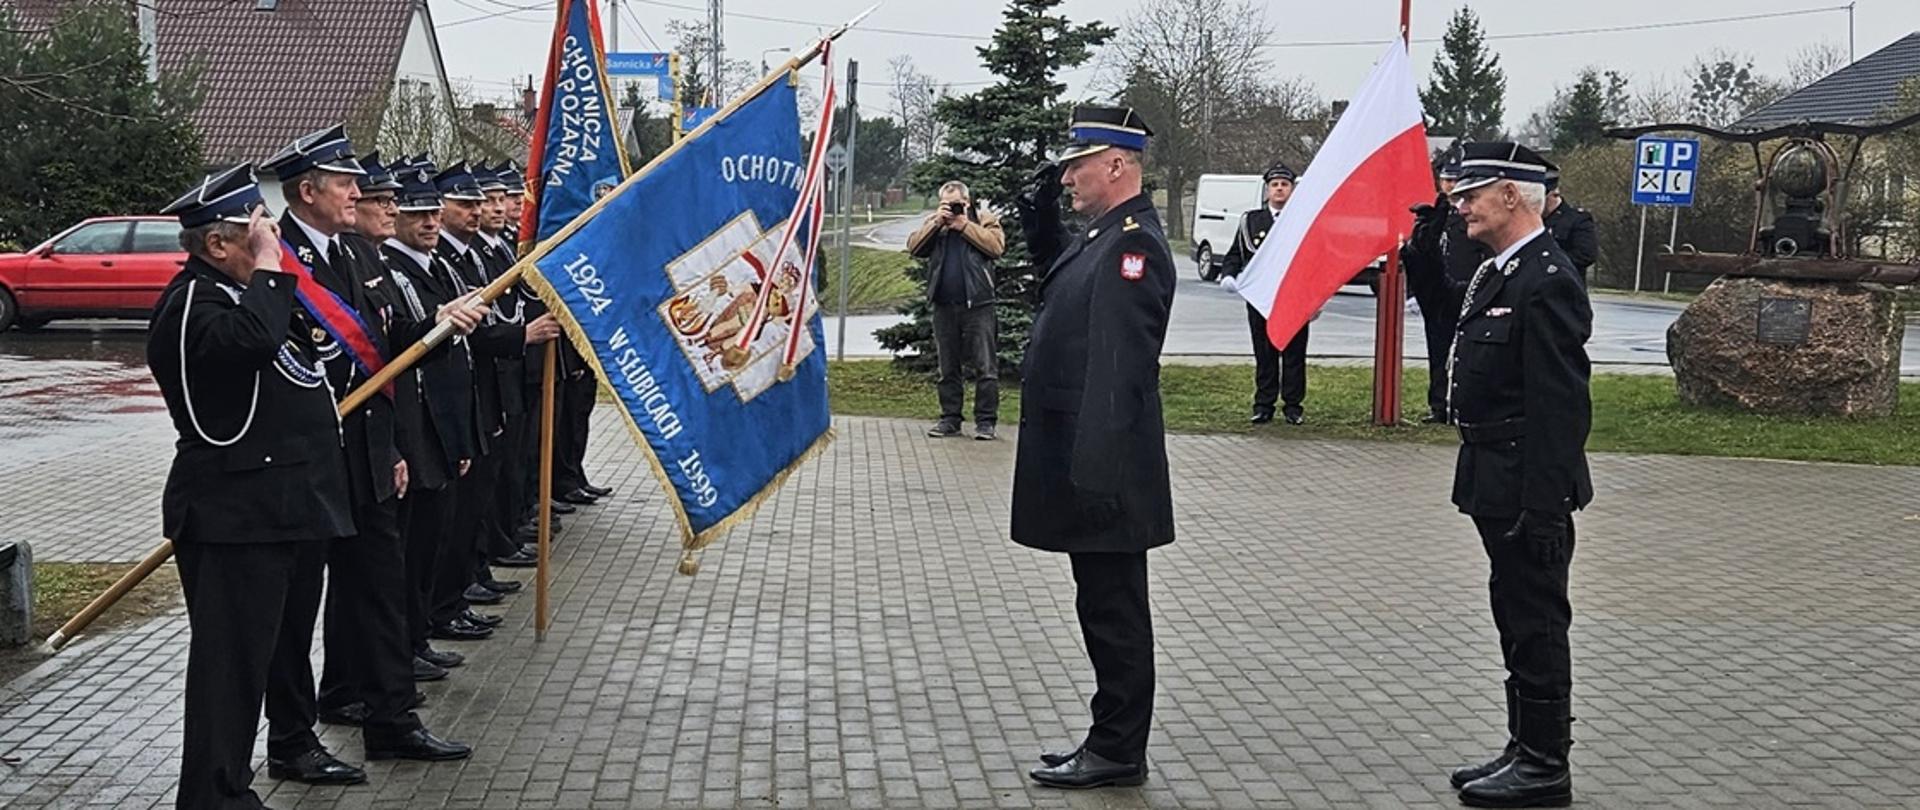 Na zdjęciu st. bryg. Jacek Starczewski p.o. Komendanta Miejskiego PSP w Płocku oddaje honor sztandarowi OSP Słubice.